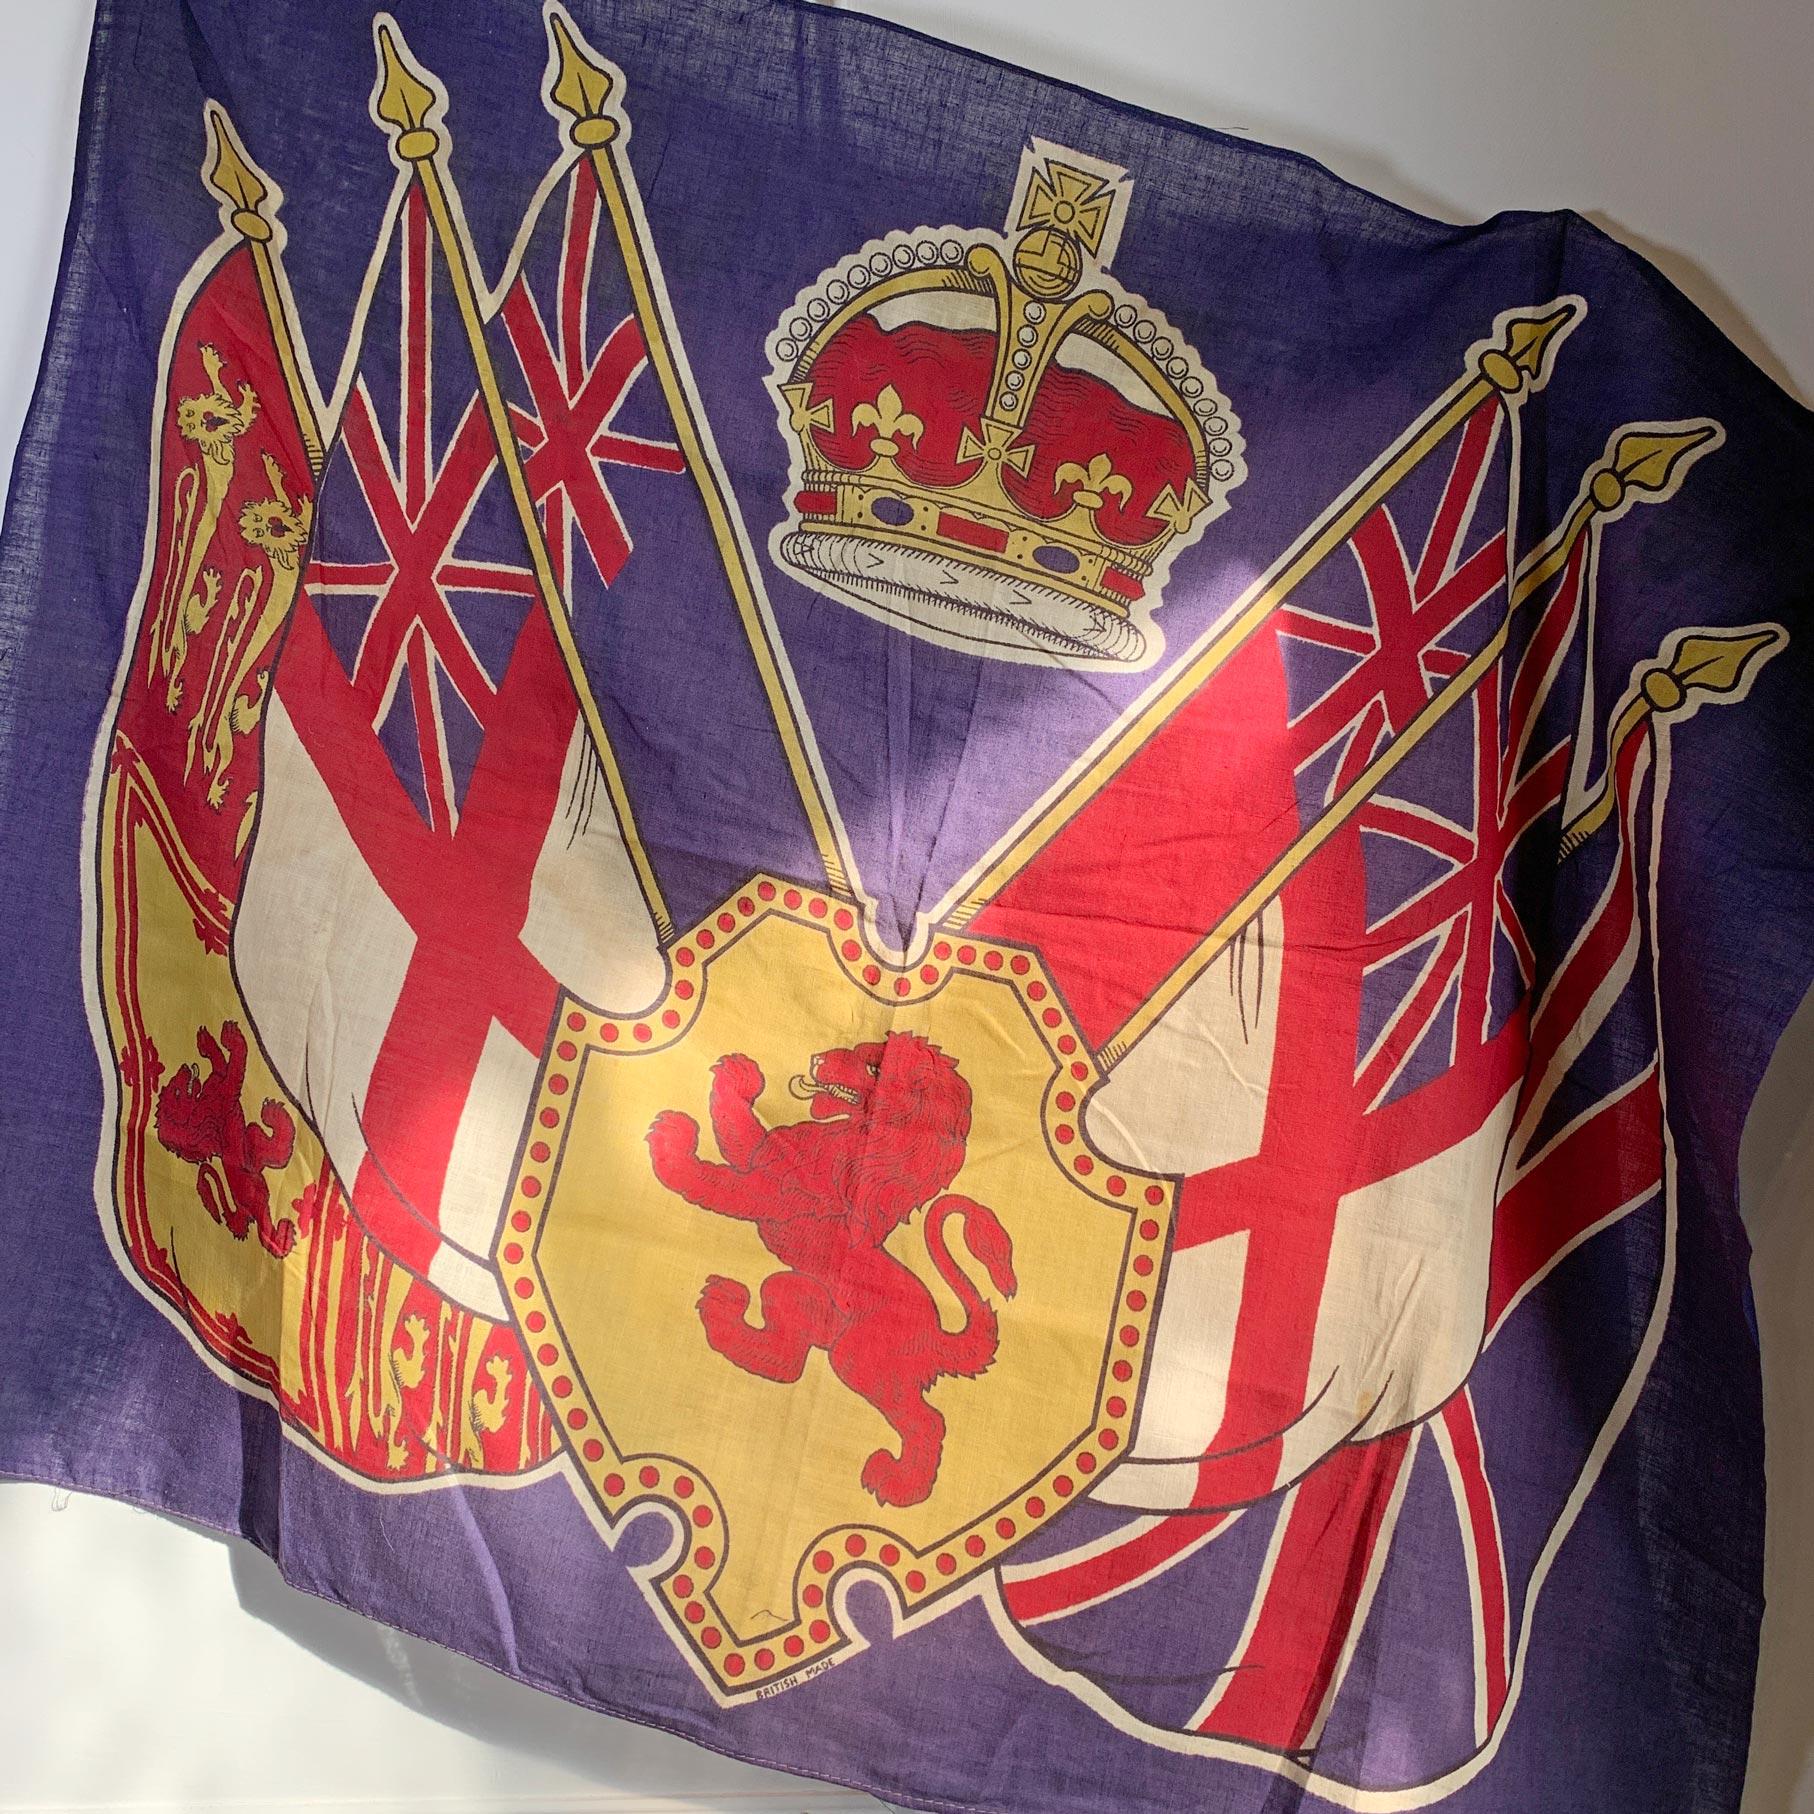 La famille royale britannique

Un drapeau royal rare et historique du couronnement de S.A.R. le roi George VI en 1937. 

George VI (Albert Frederick Arthur George ; 14 décembre 1895 - 6 février 1952) a été roi du Royaume-Uni et des dominions du